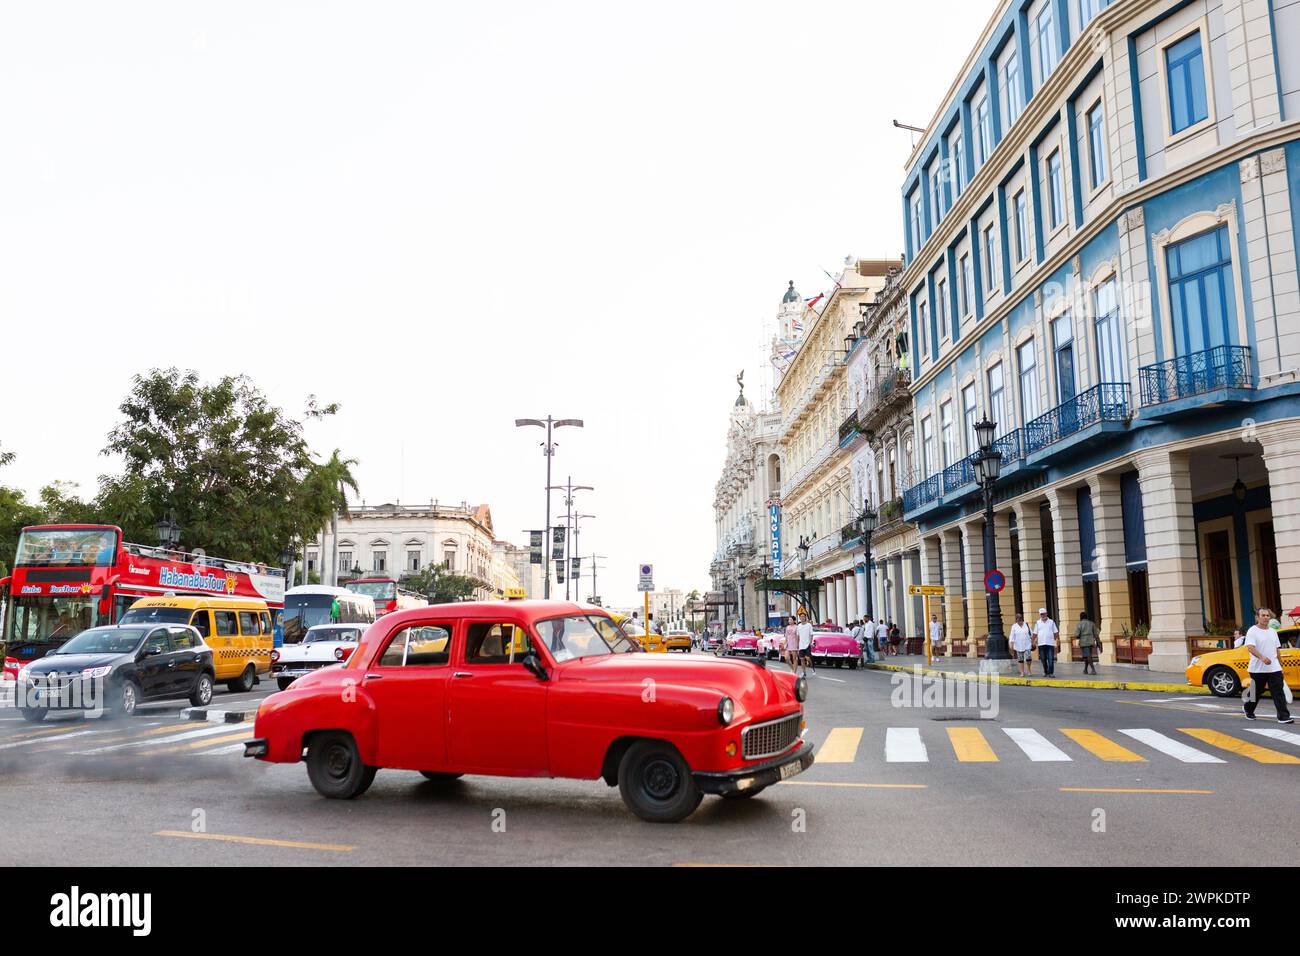 L'auto rossa cubana si distingue tra la vivace scena dell'Avana Foto Stock